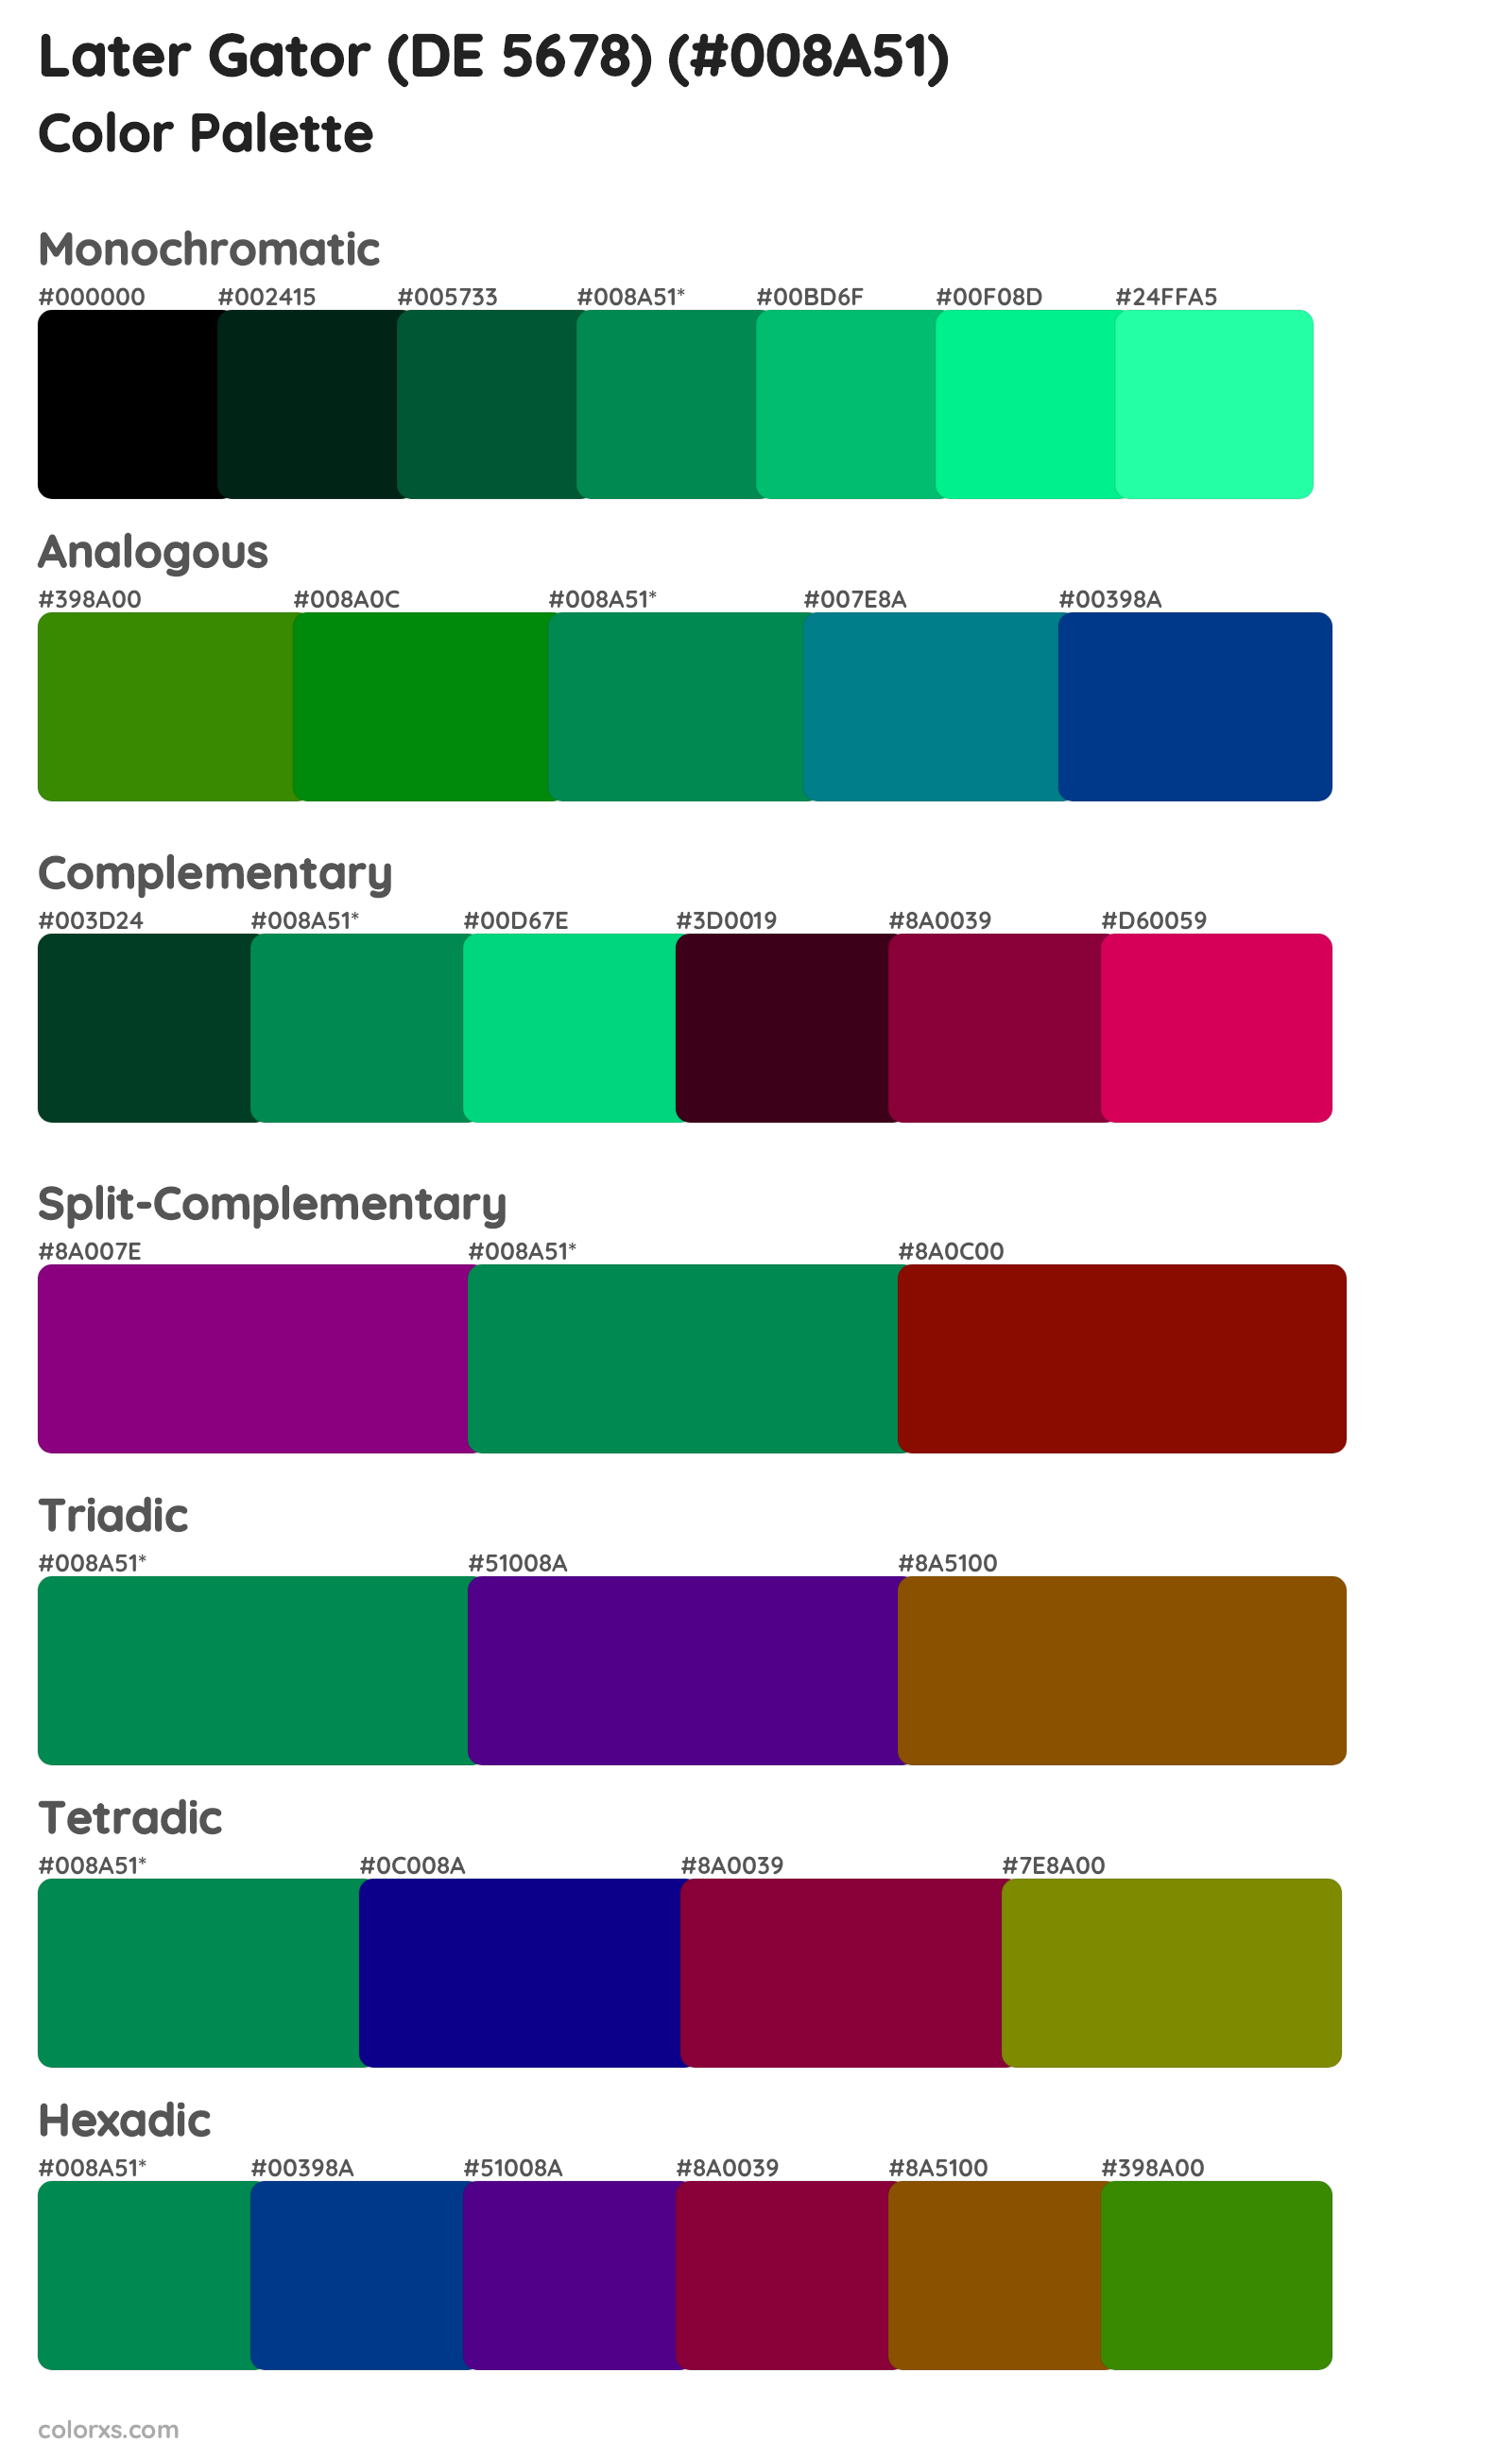 Later Gator (DE 5678) Color Scheme Palettes